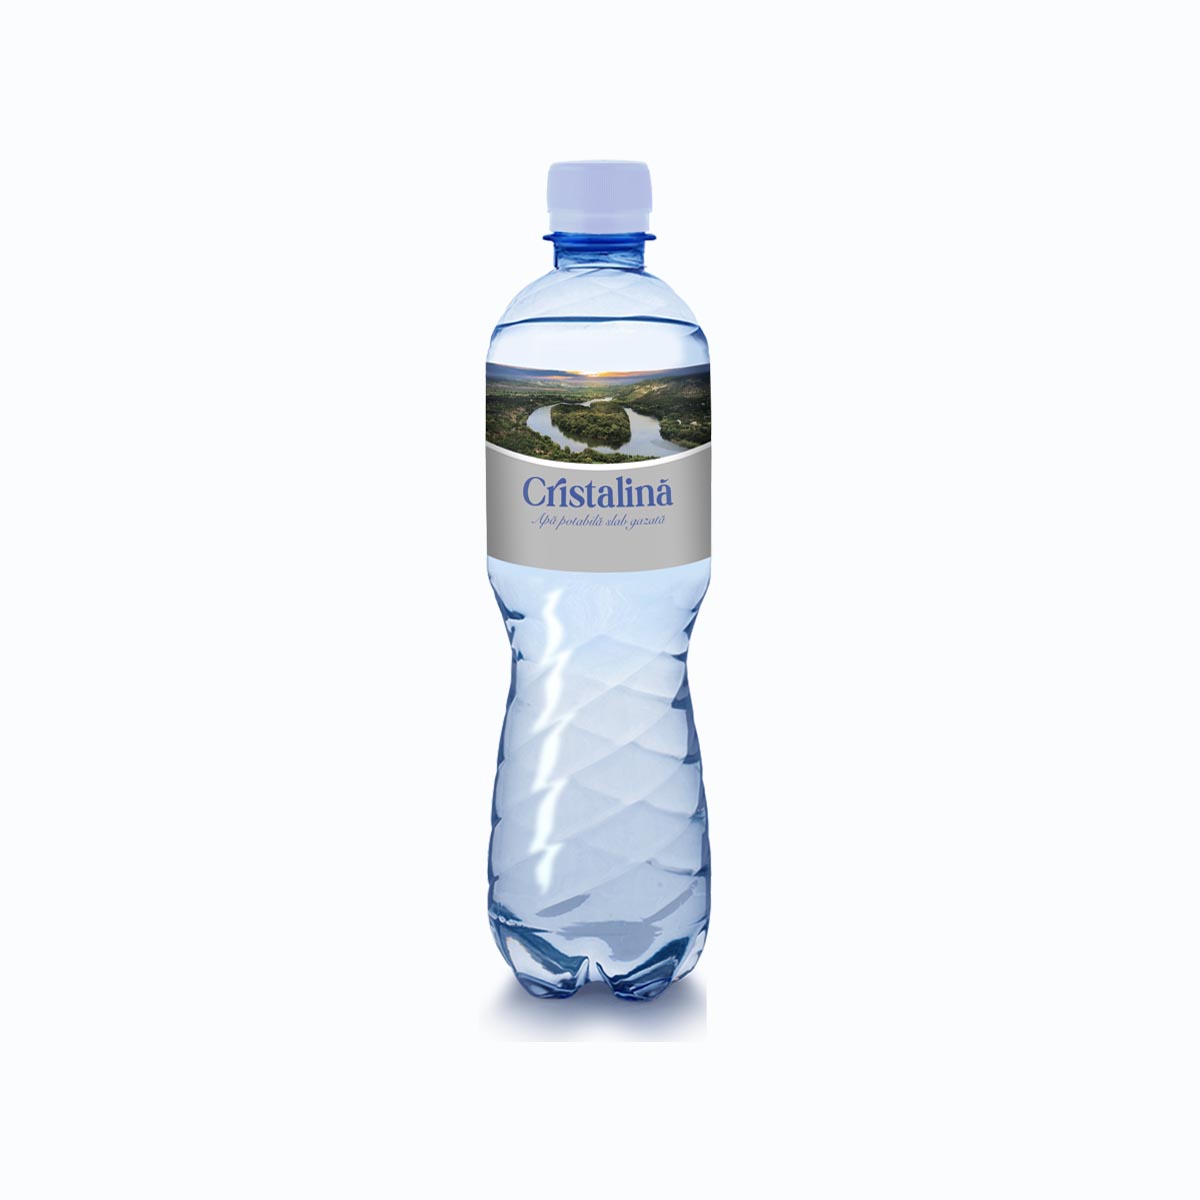 Вода в бутылях спб. Вода белая бутылка магазина. Вода питьевая la nature 1.5 л слабогазиров. Бонаково питьевая вода газированная пол-литра. Apa cristalina 3 l.